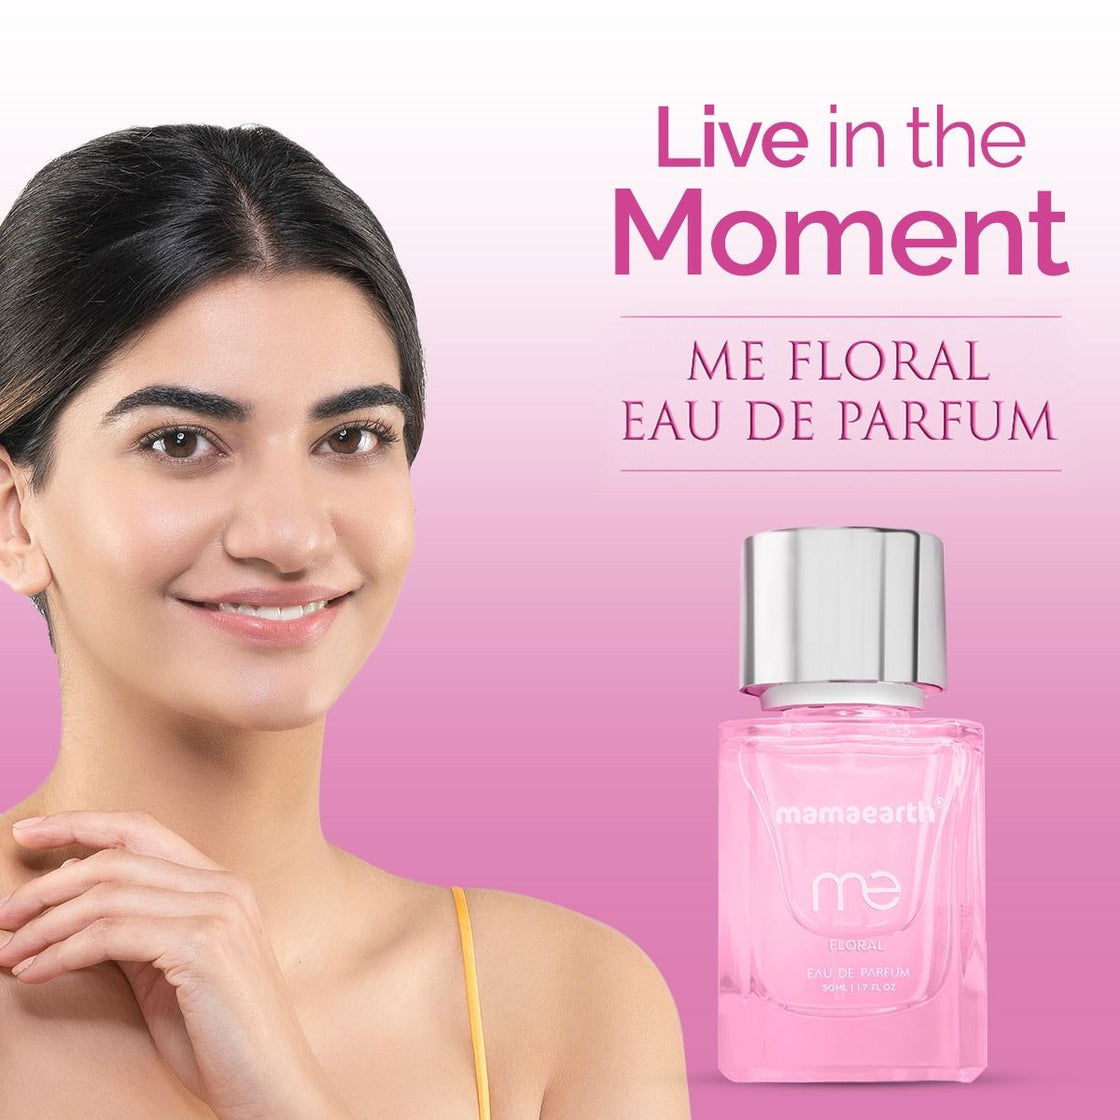 Mamaearth Me Floral Eau De Parfum - Live In The Moment-6